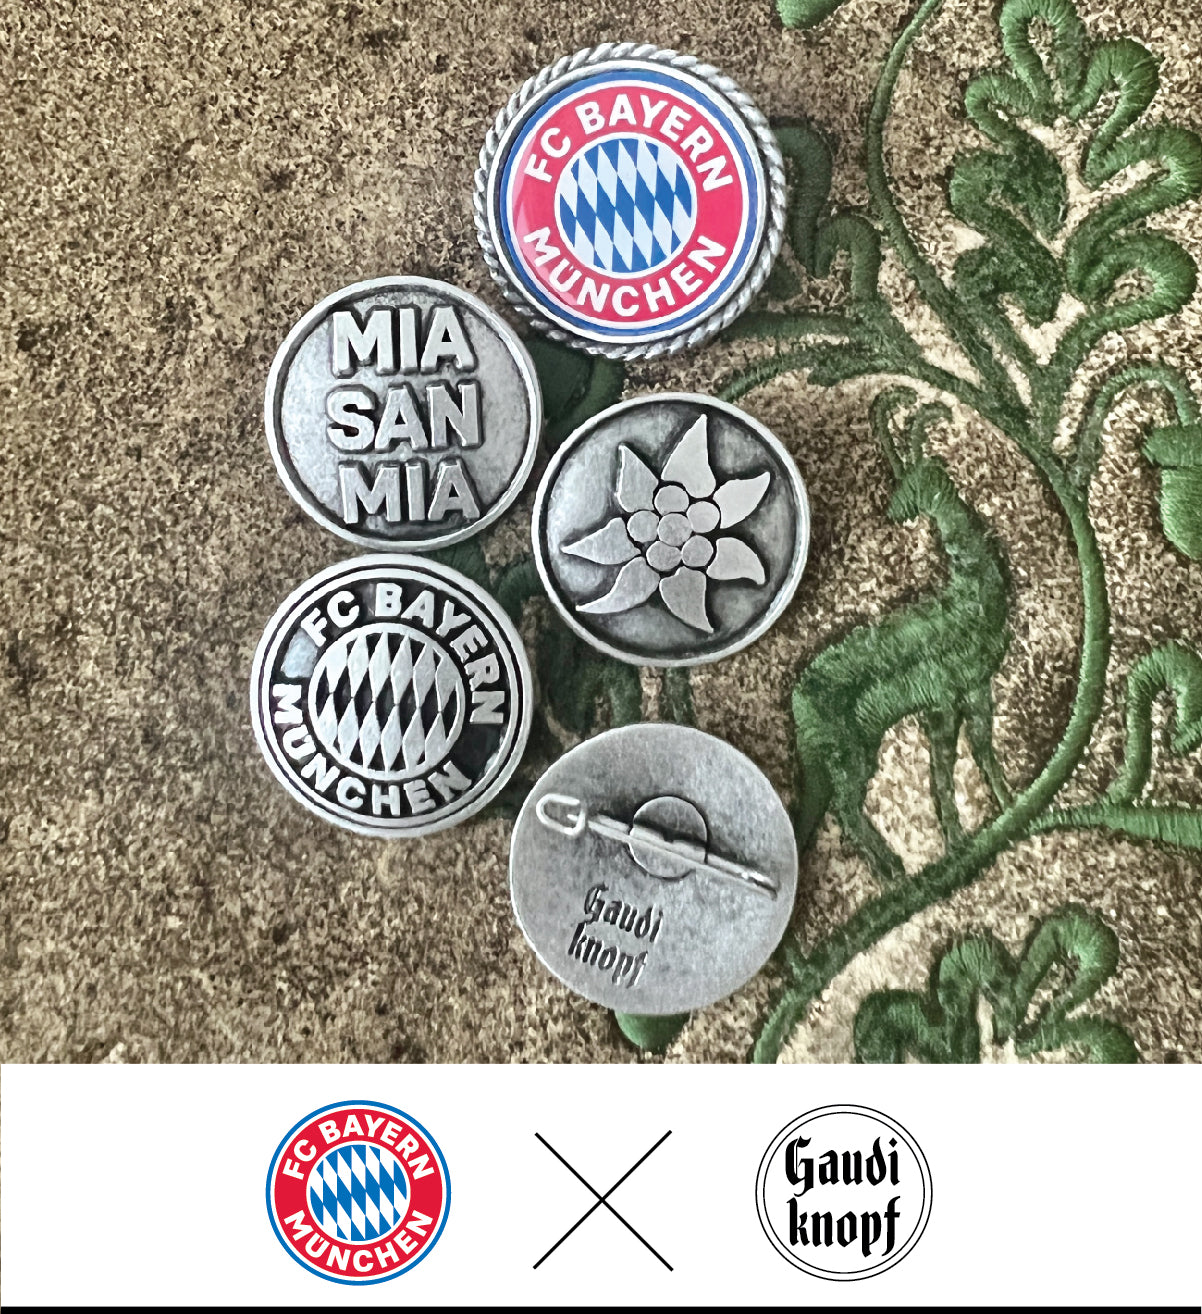 FC Bayern München x Gaudiknopf